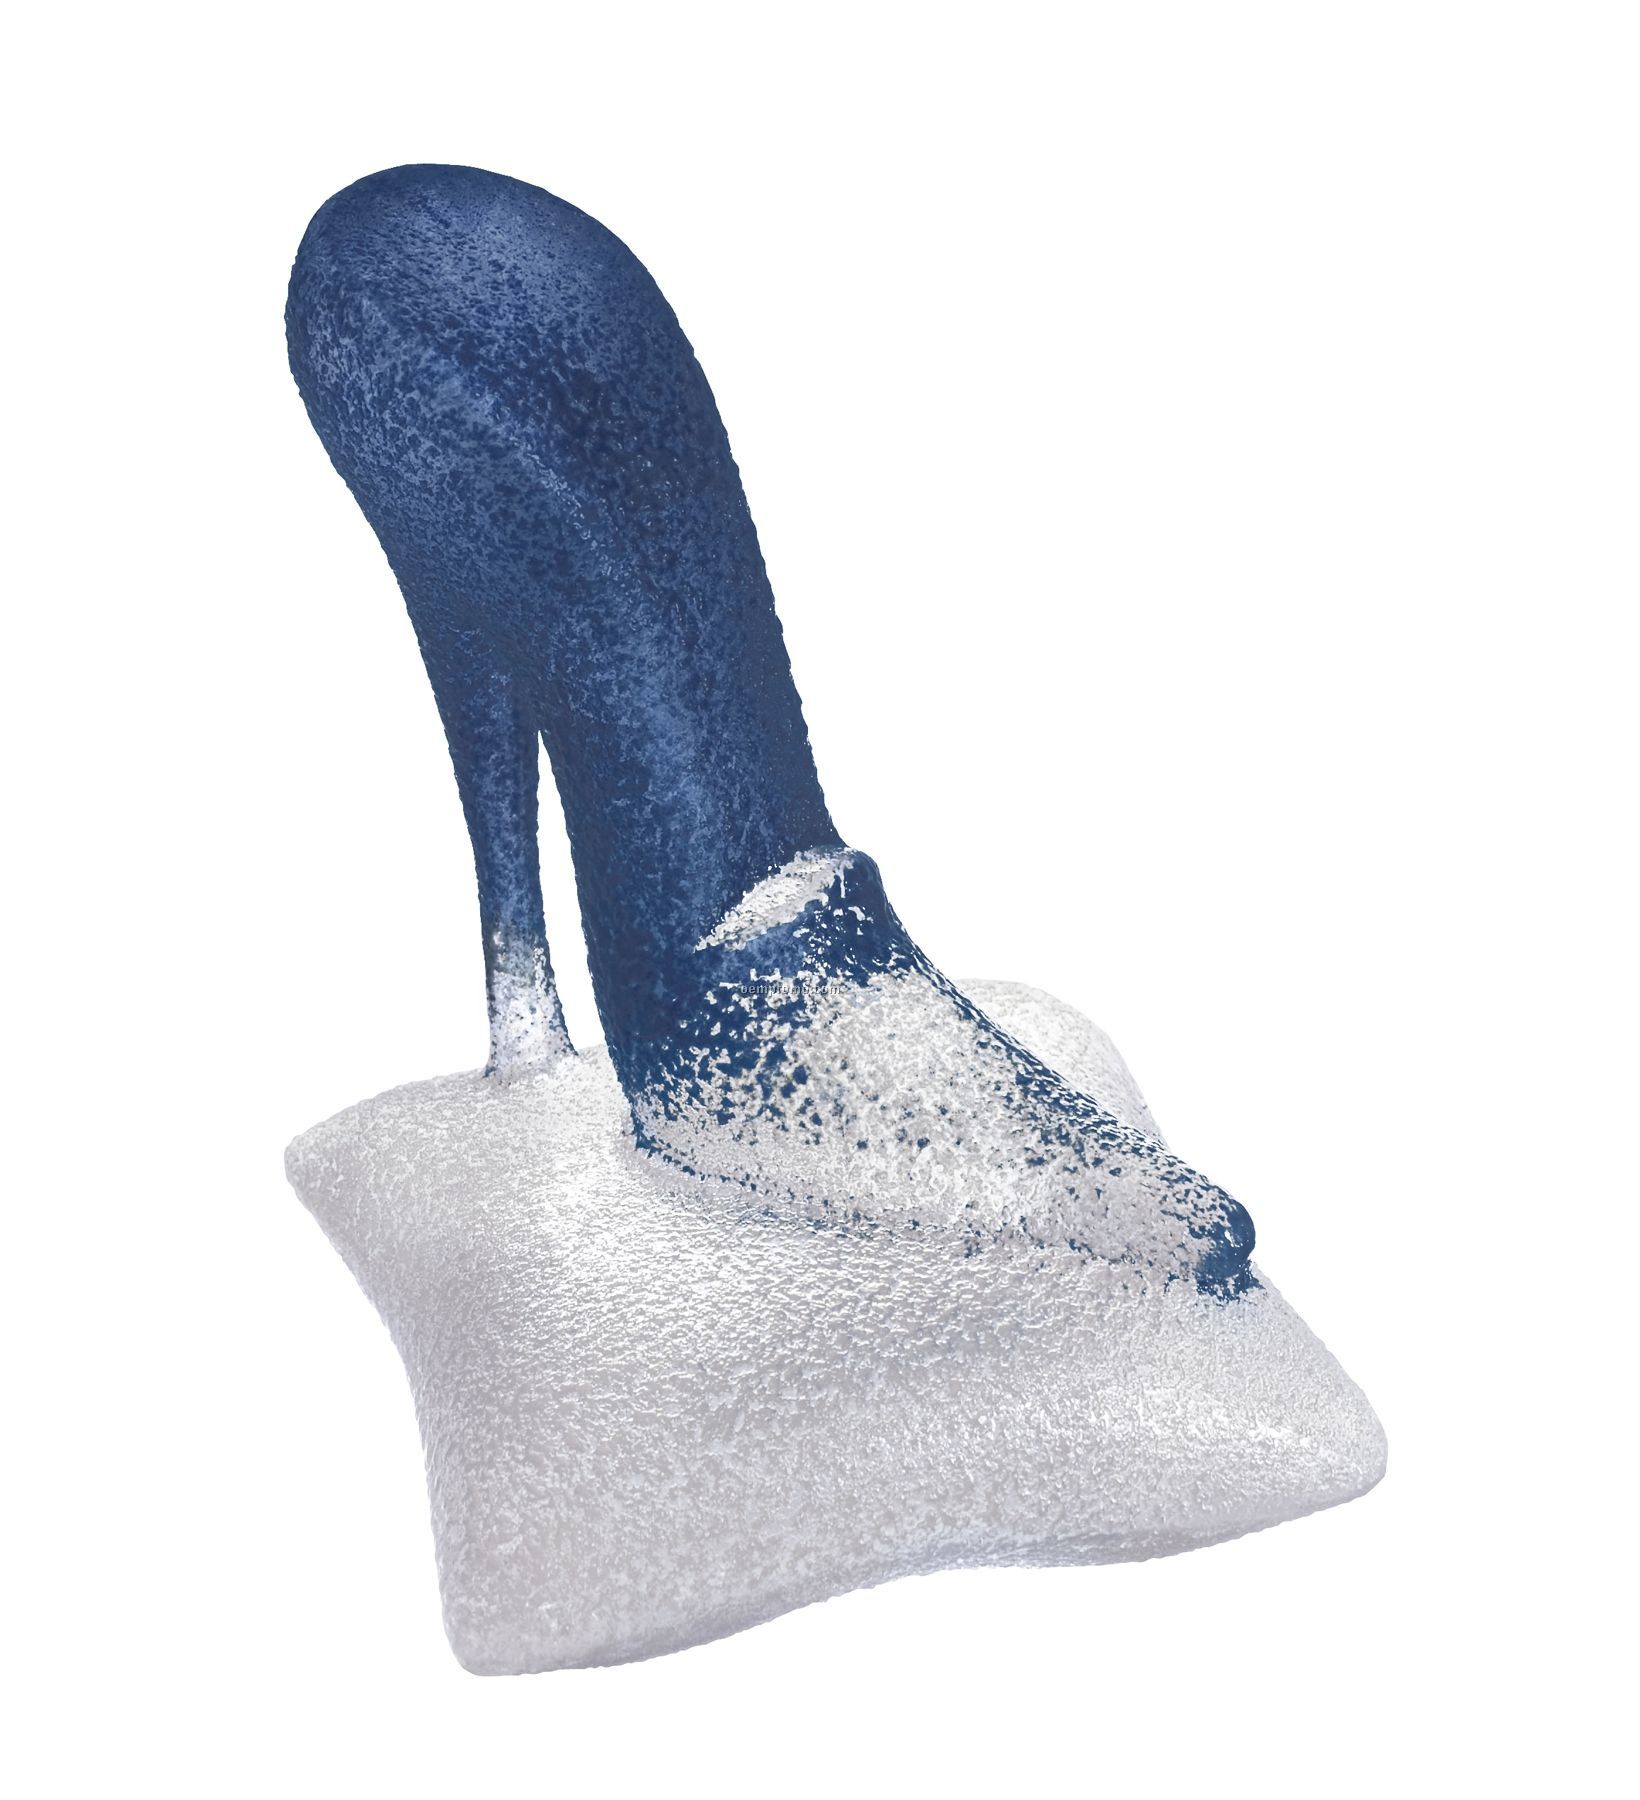 Catwalk Glass Miniature Blue Shoe Sculpture By Kjell Engman